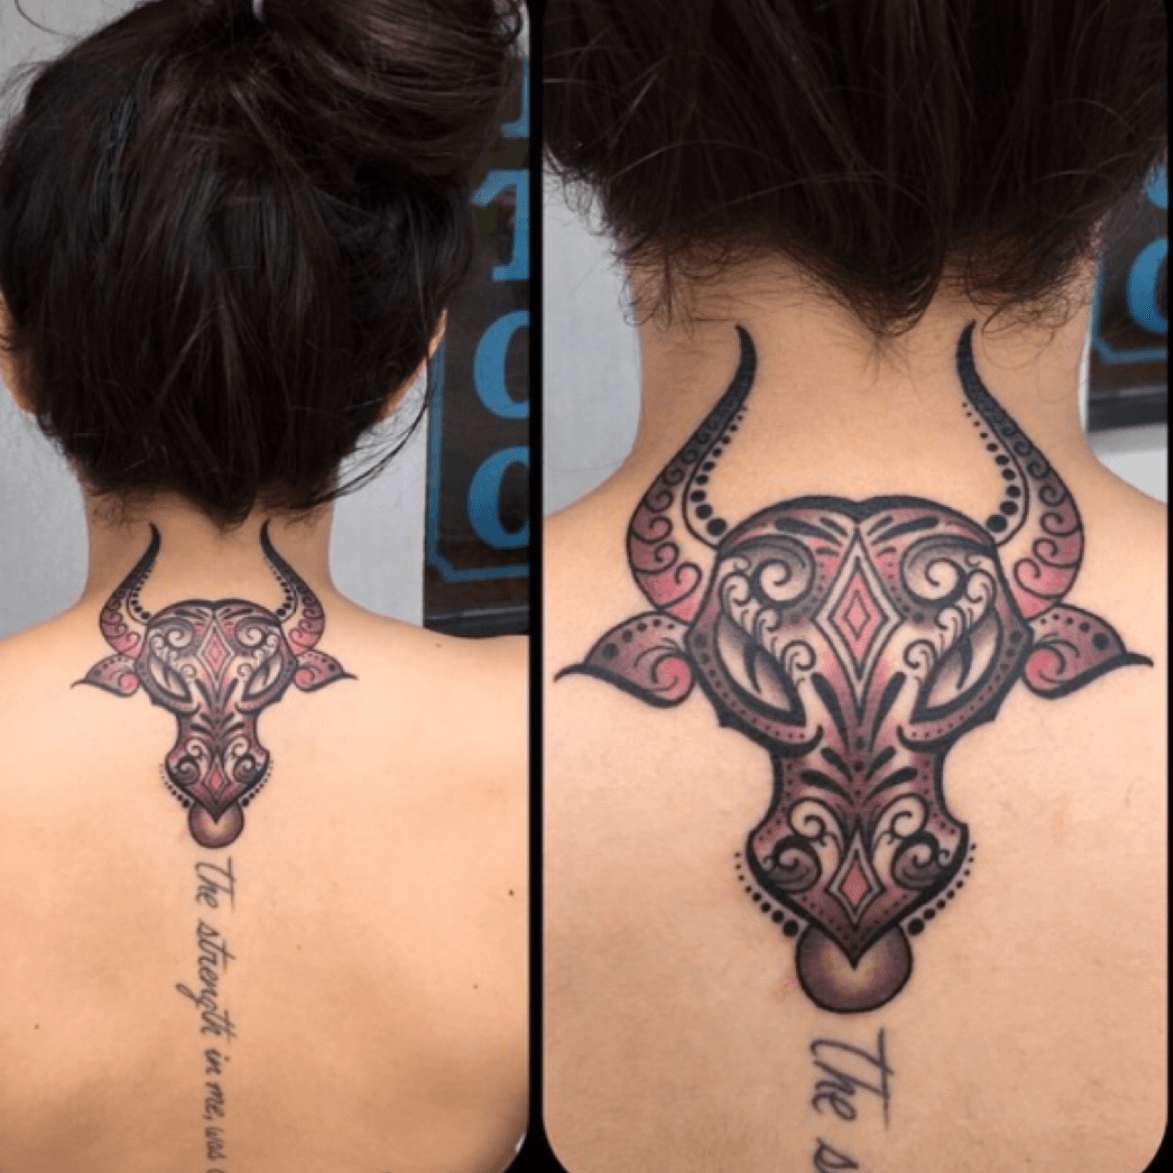 Tattoo uploaded by Tara • #katietattoos #Taurus #spinetattoo • Tattoodo